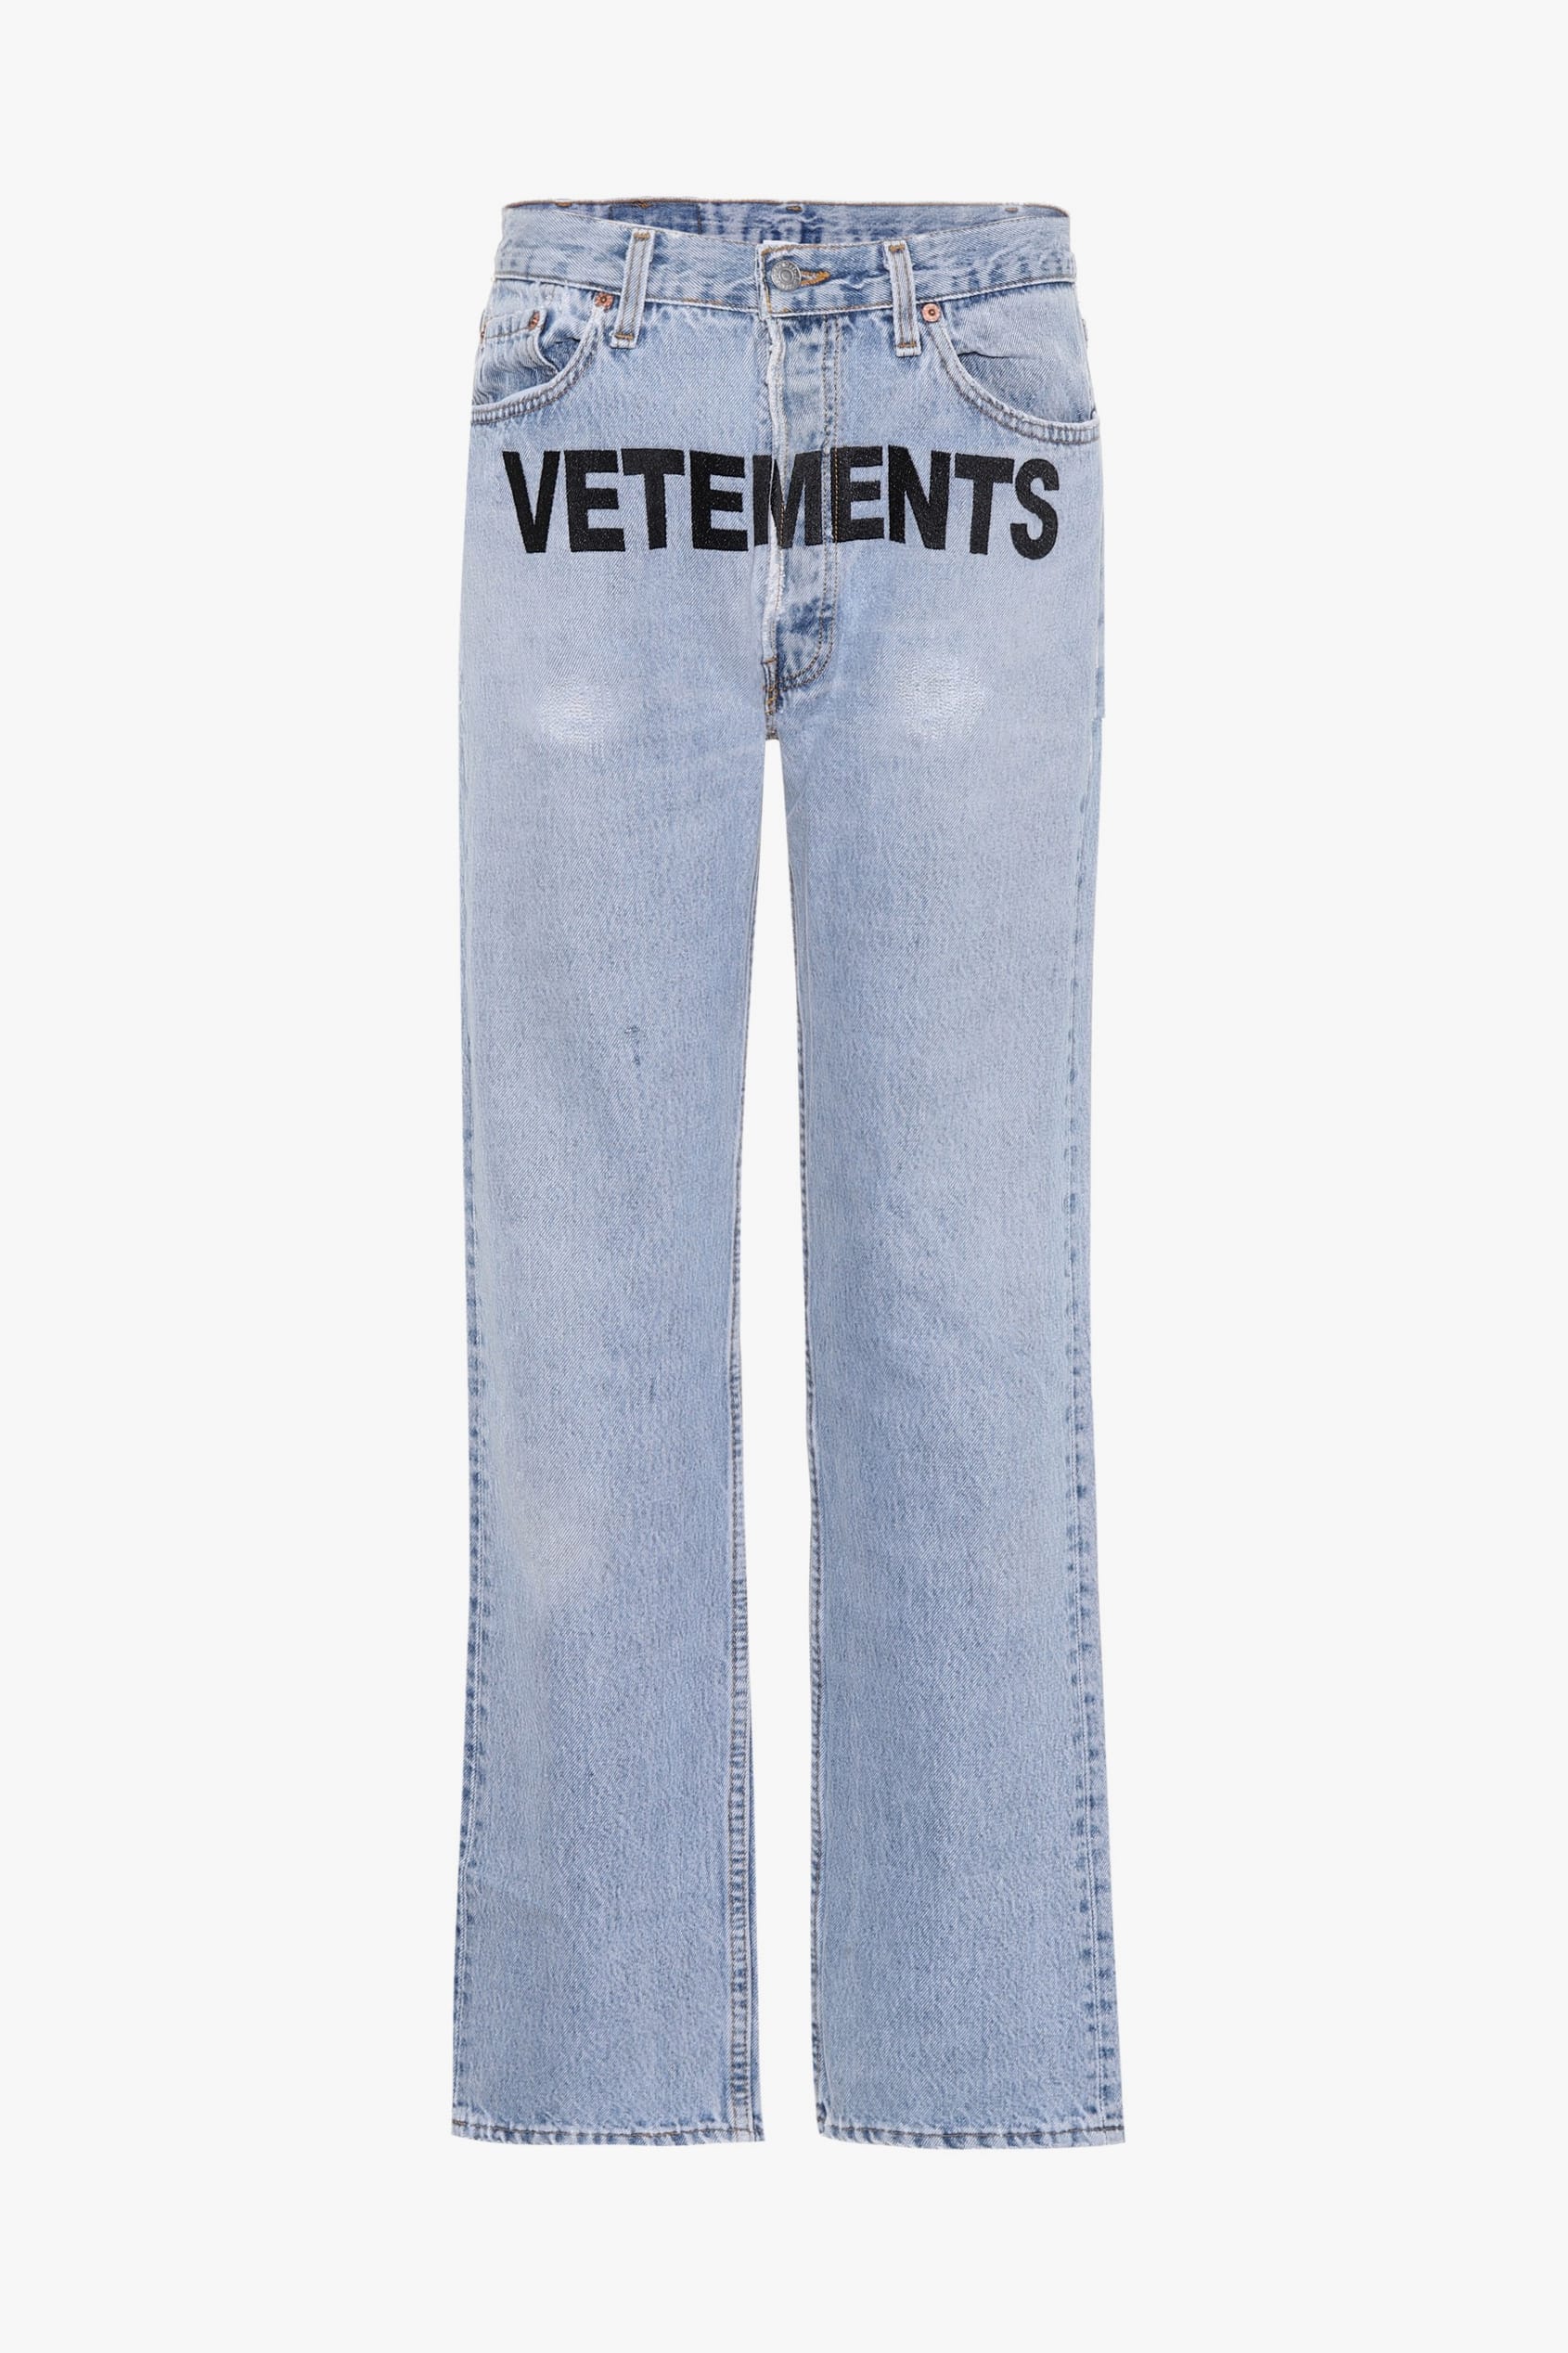 vetements levi's jeans